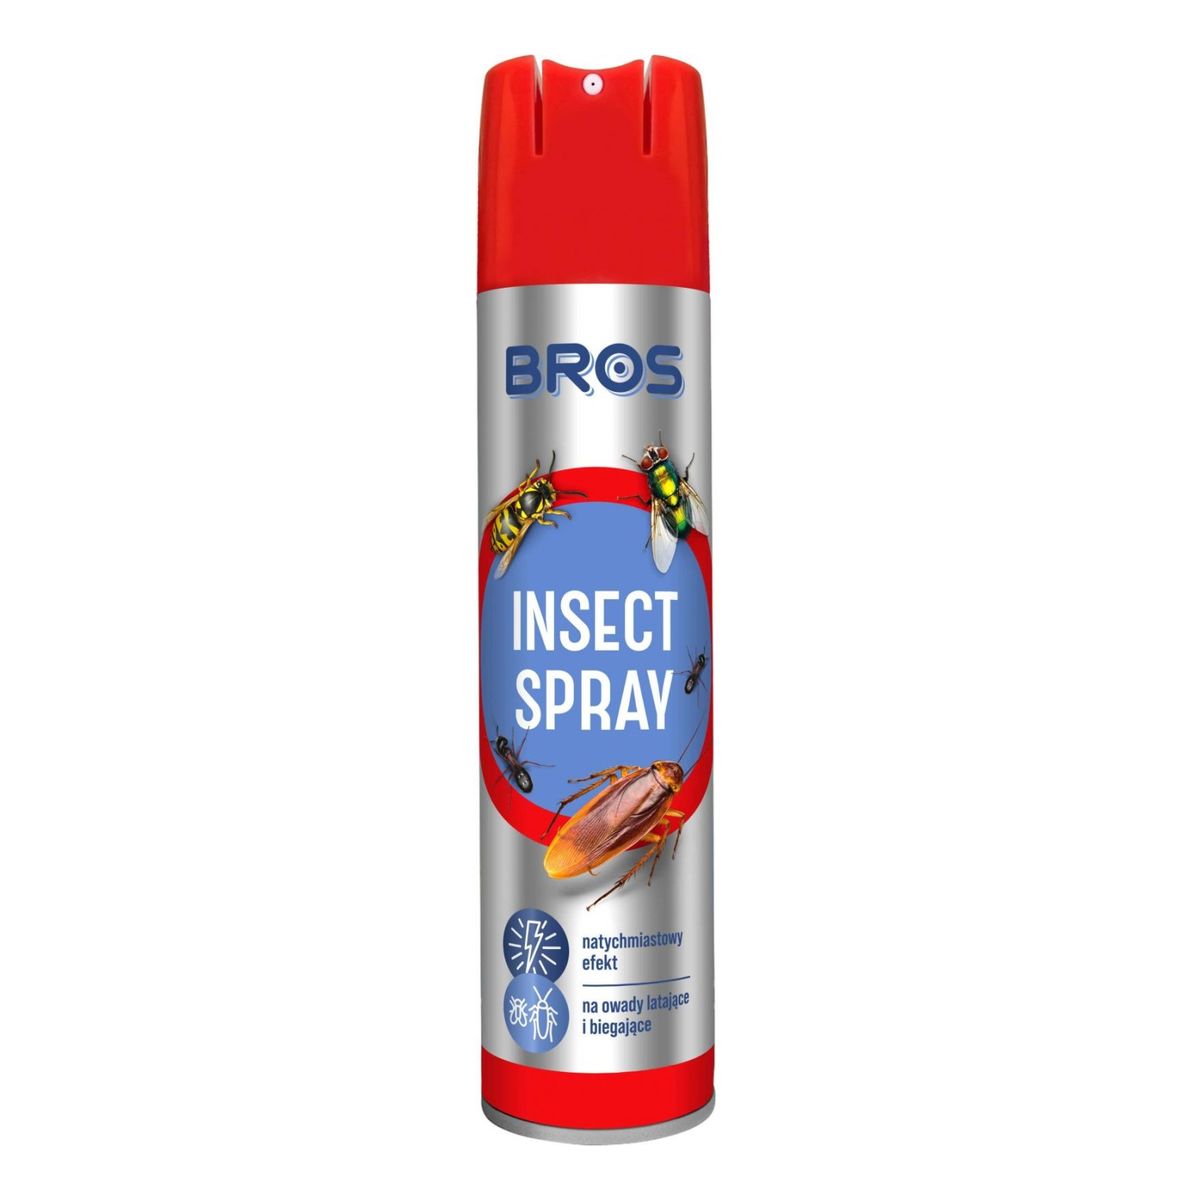 Bros Insect Spray na owady latające i biegające muchy 300ml